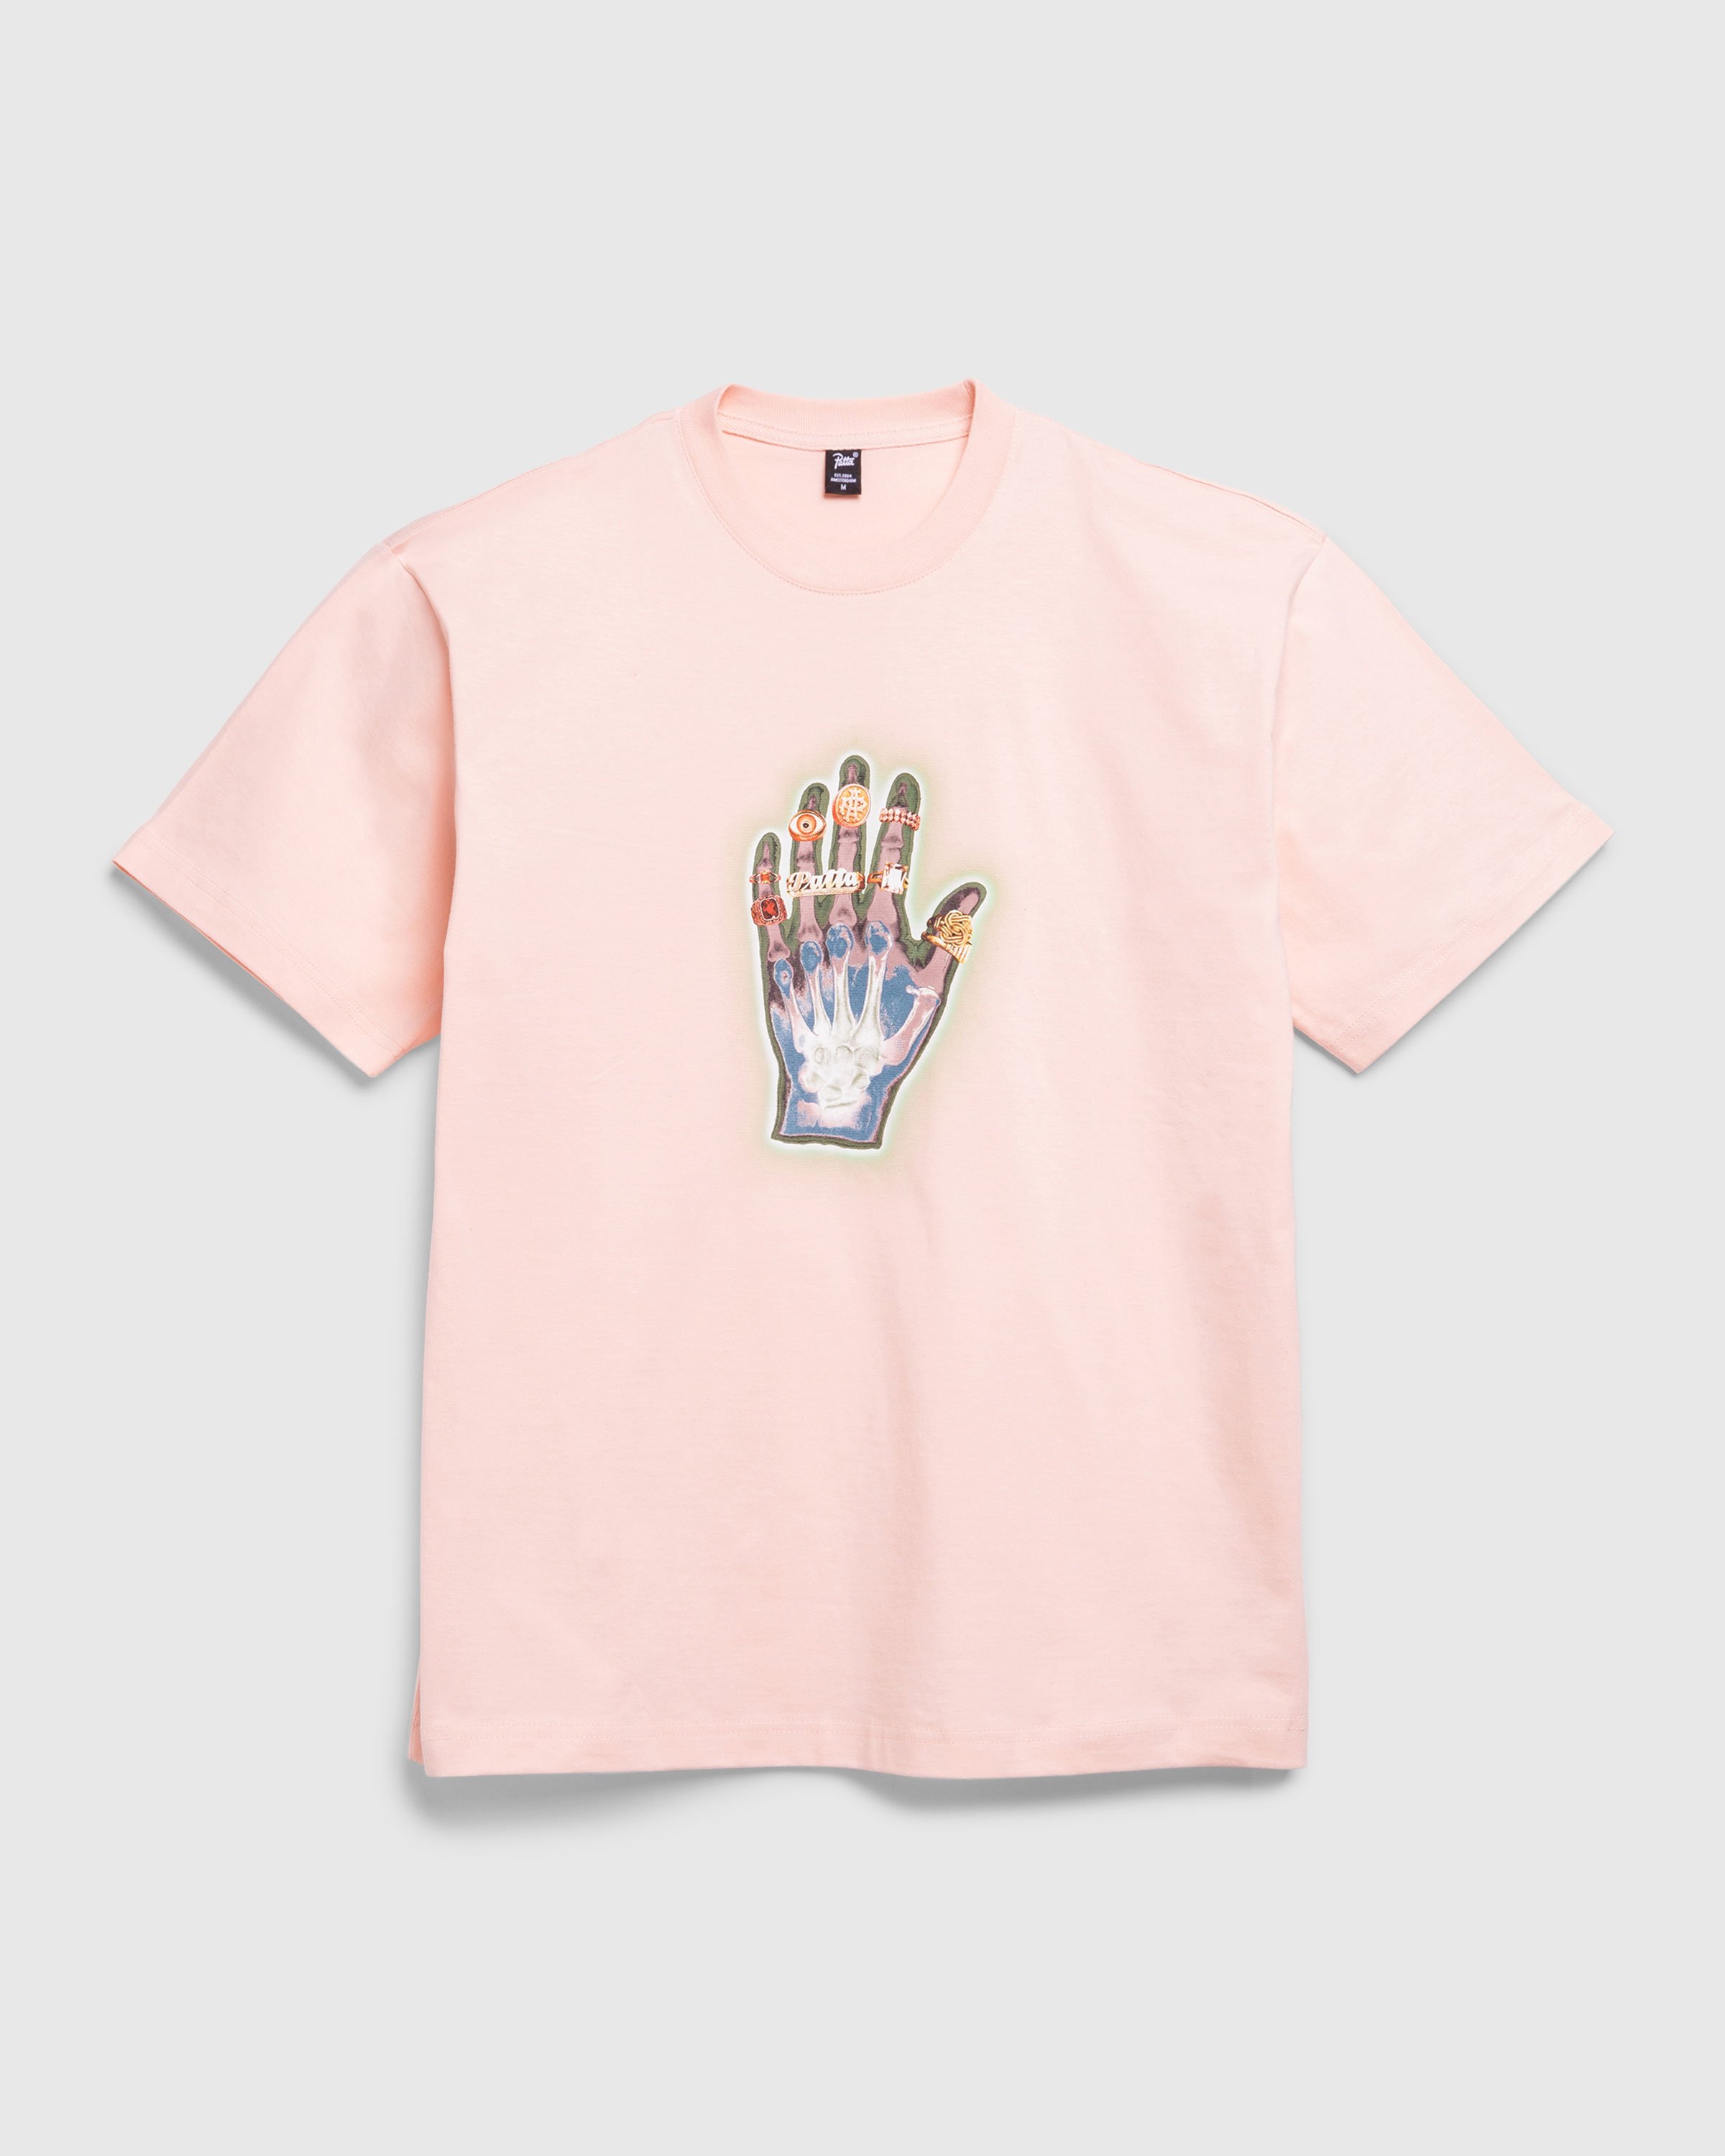 Patta - Healing Hands T-Shirt Lotus - Clothing - Pink - Image 1